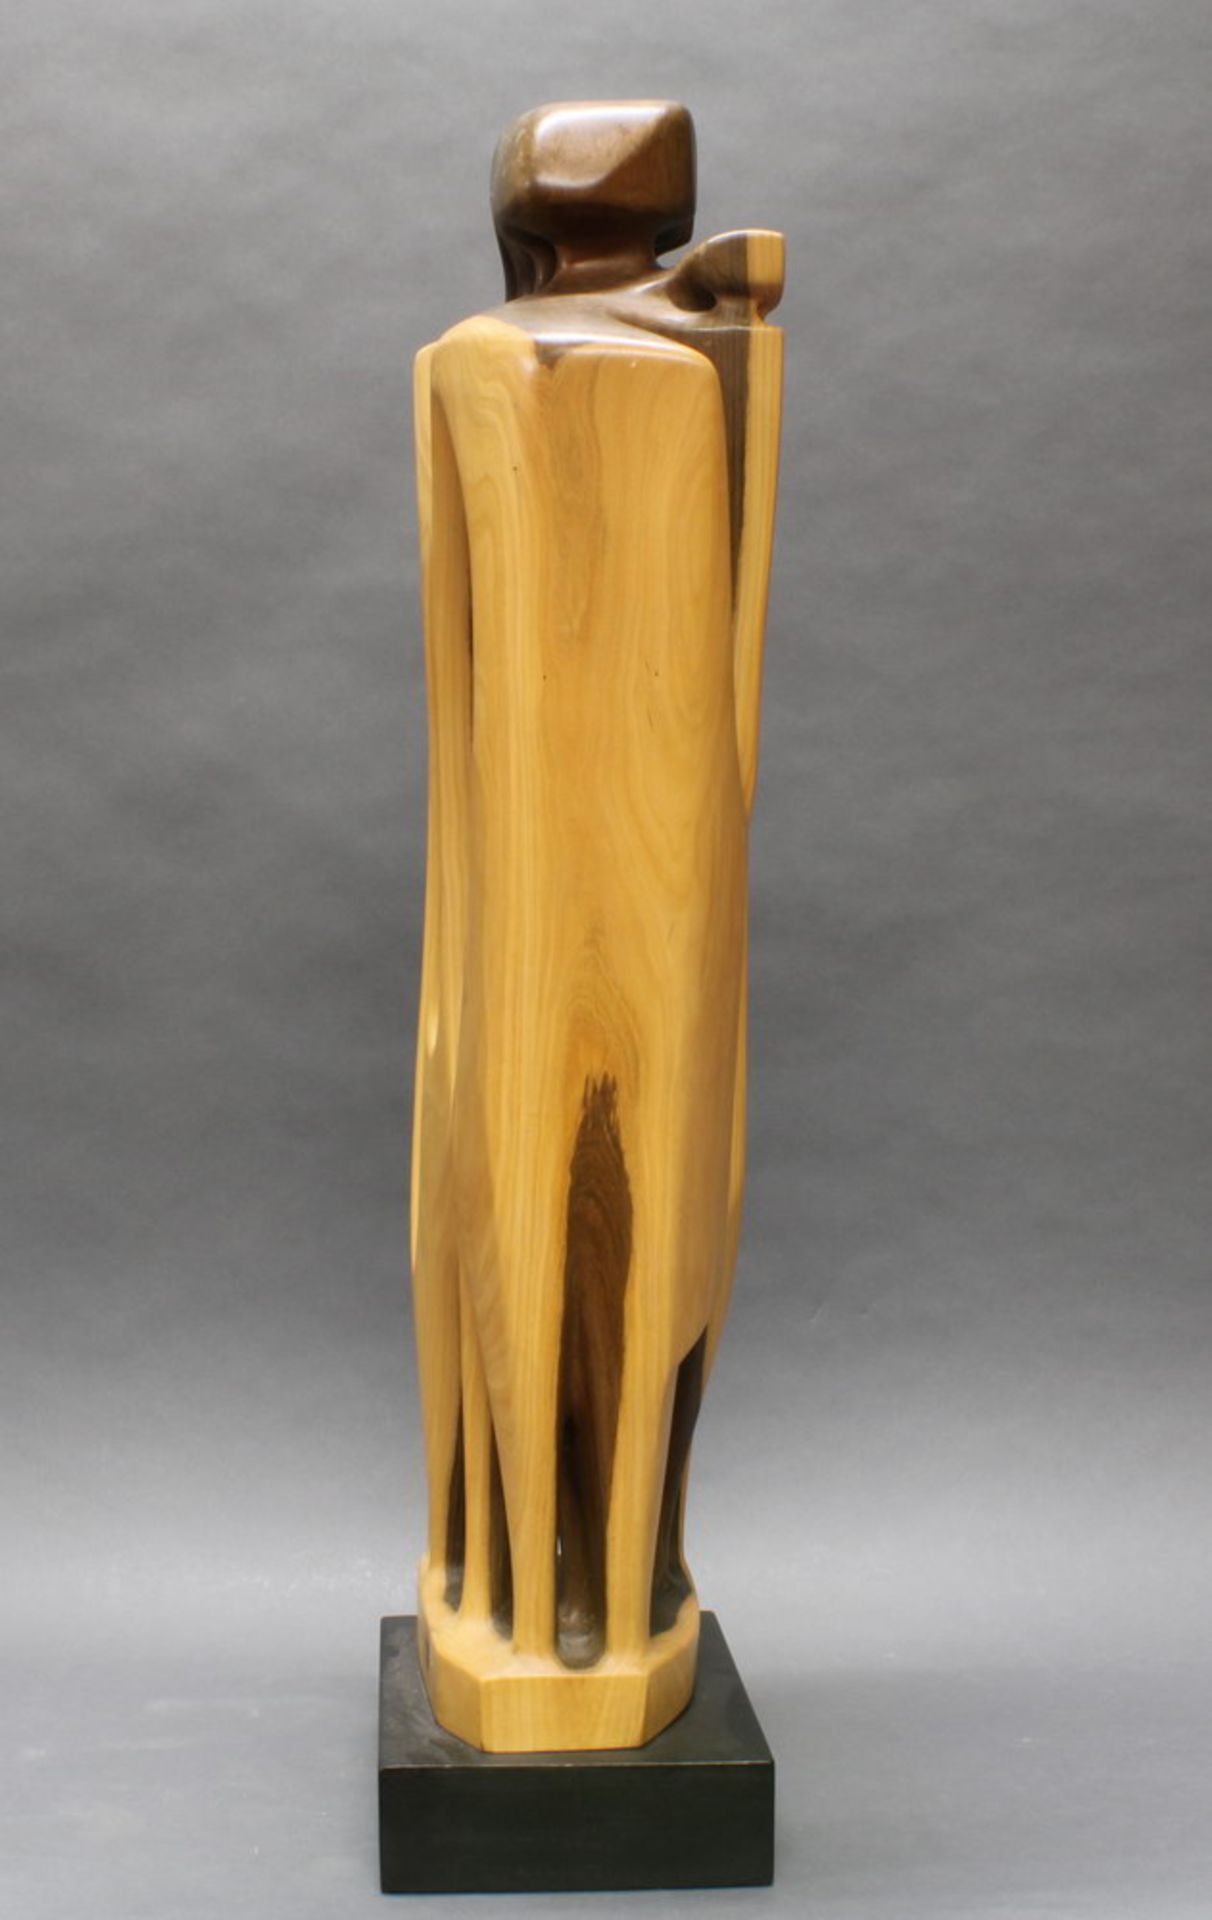 Skulptur, Holz geschnitzt, "Abstrakt", seitlich bezeichnet Peter Balogh, auf Holzsockel, 94 cm - Bild 4 aus 5